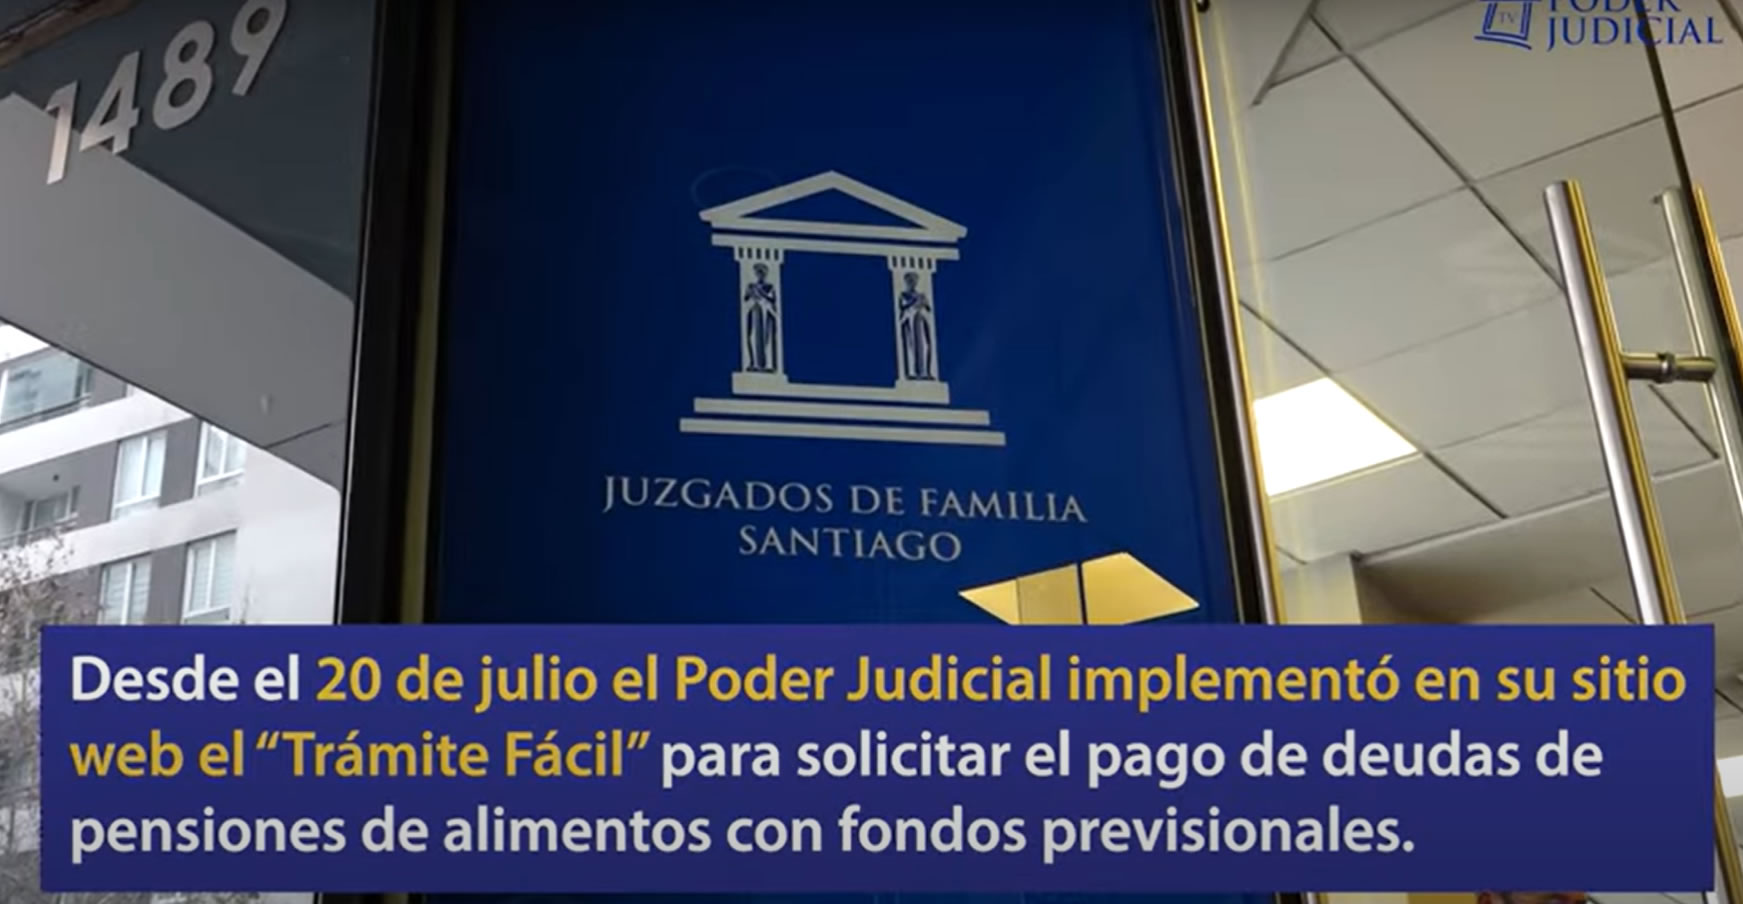 Es oficial: Ya se puede solicitar en el Poder Judicial el pago de pensiones de alimentos con cargo a los fondos previsionales del deudor